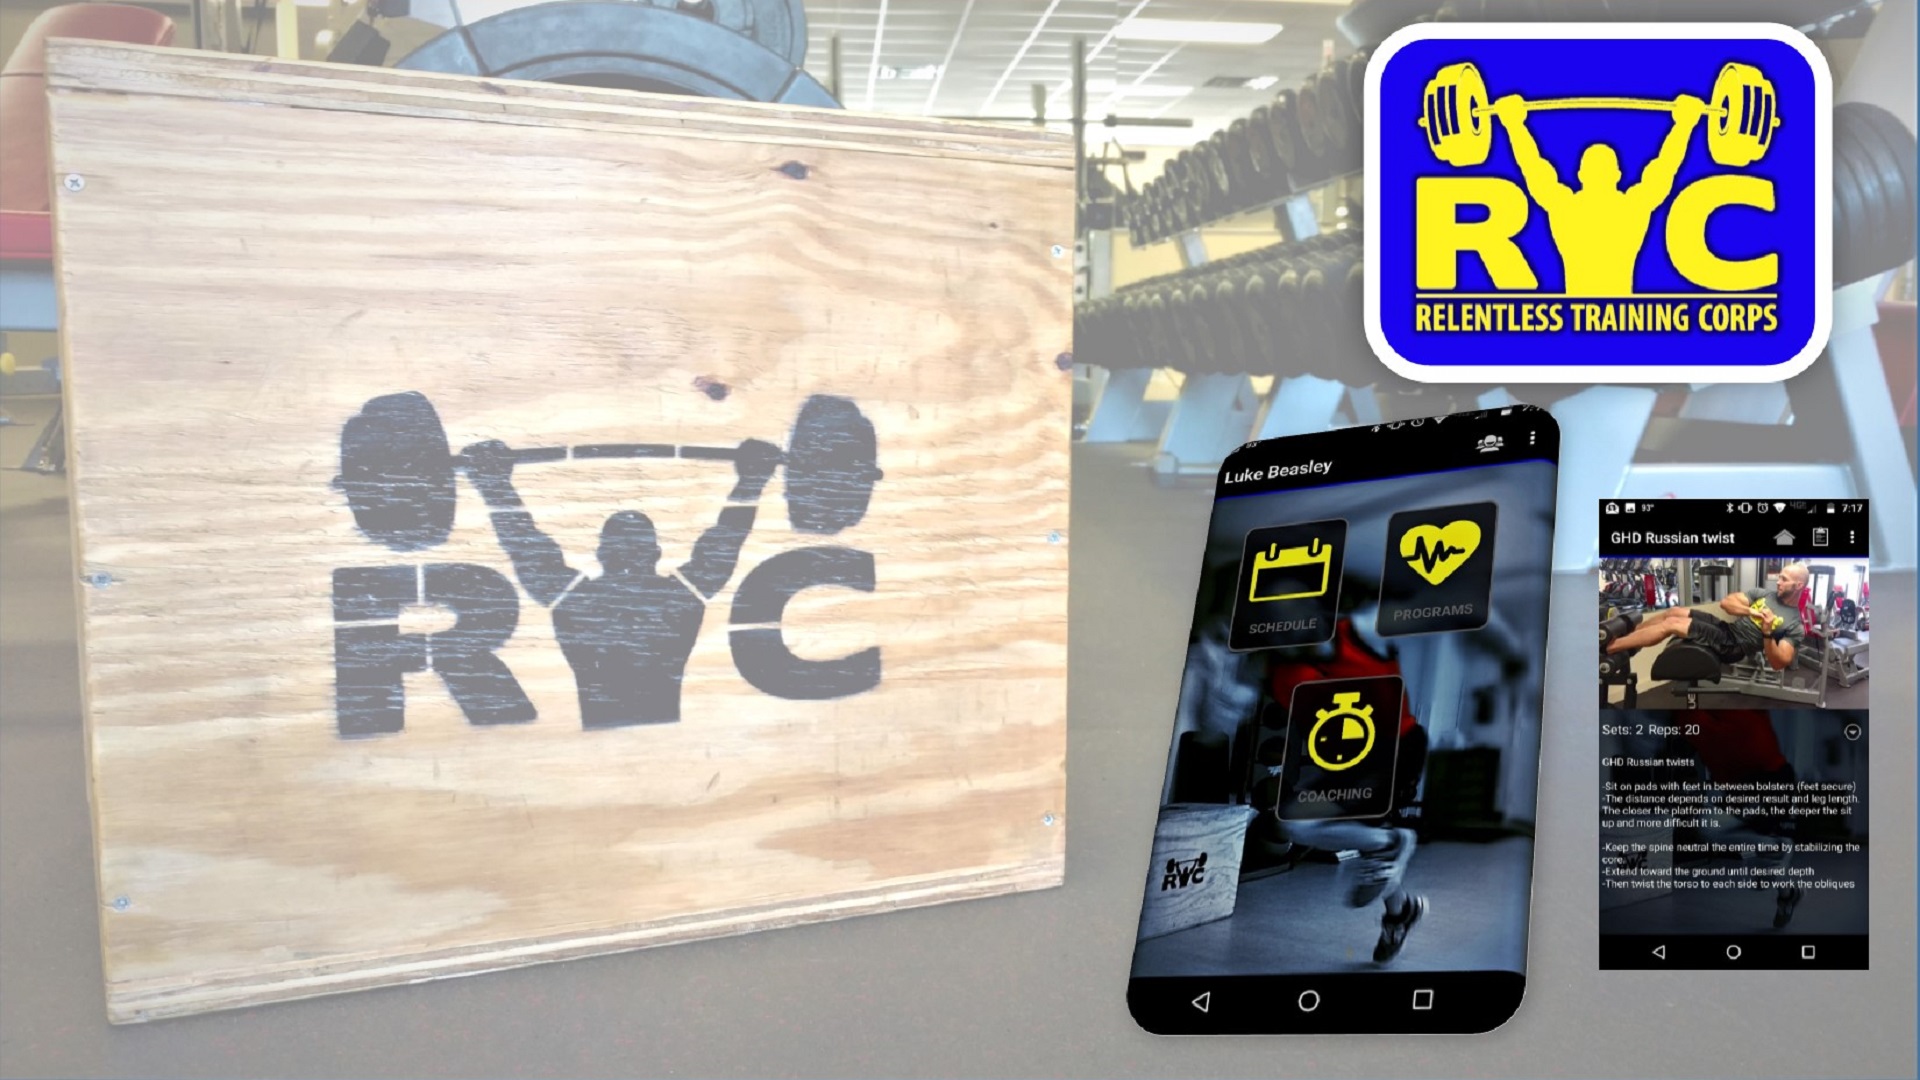 The RTC App